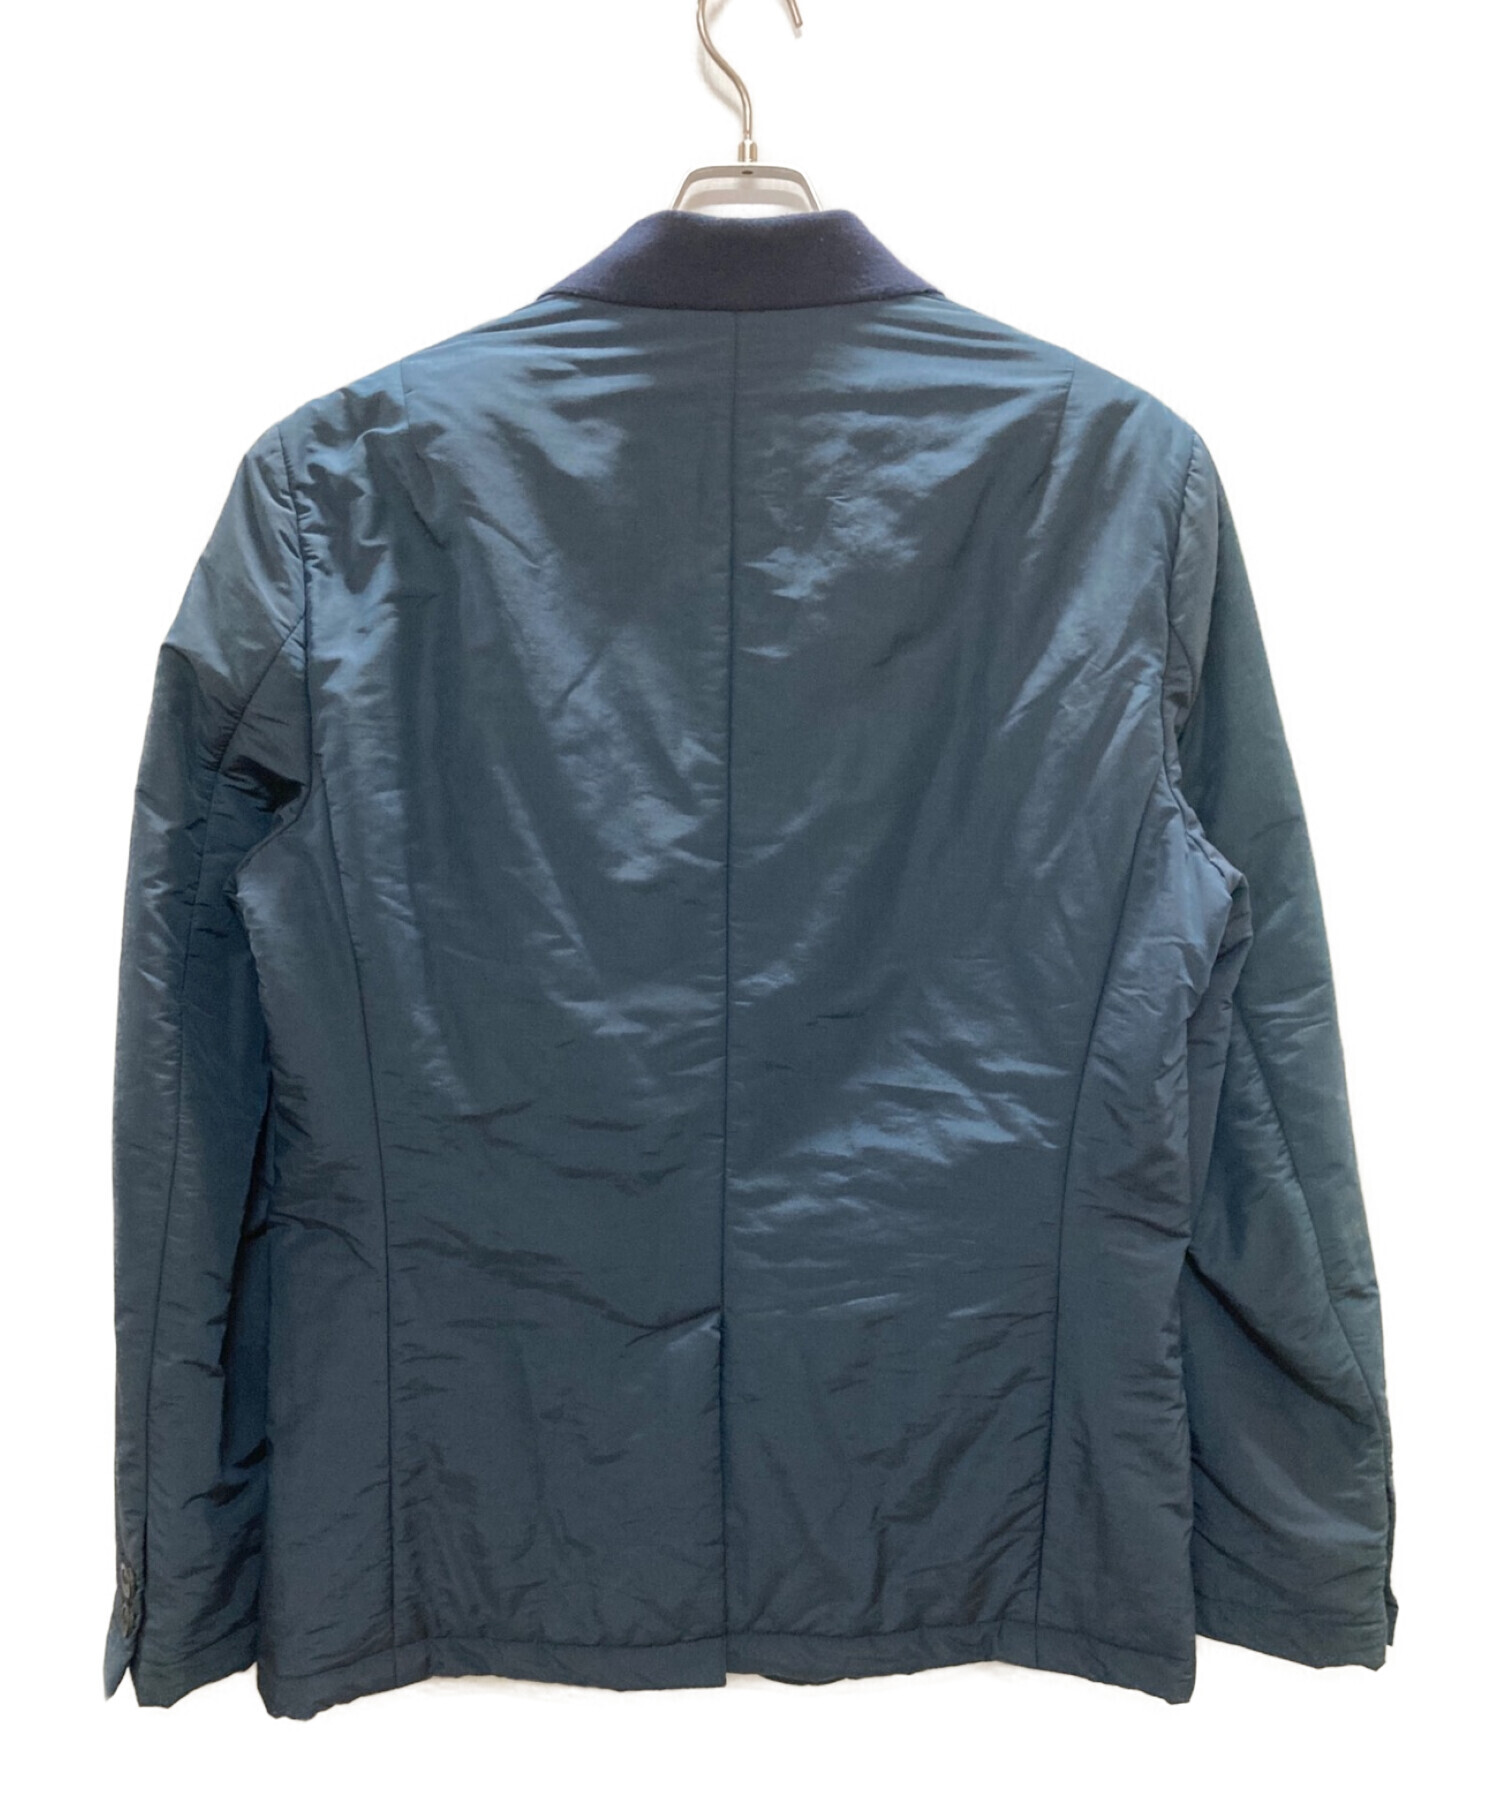 EMPORIO ARMANI (エンポリオアルマーニ) 中綿テーラードジャケット ネイビー サイズ:54